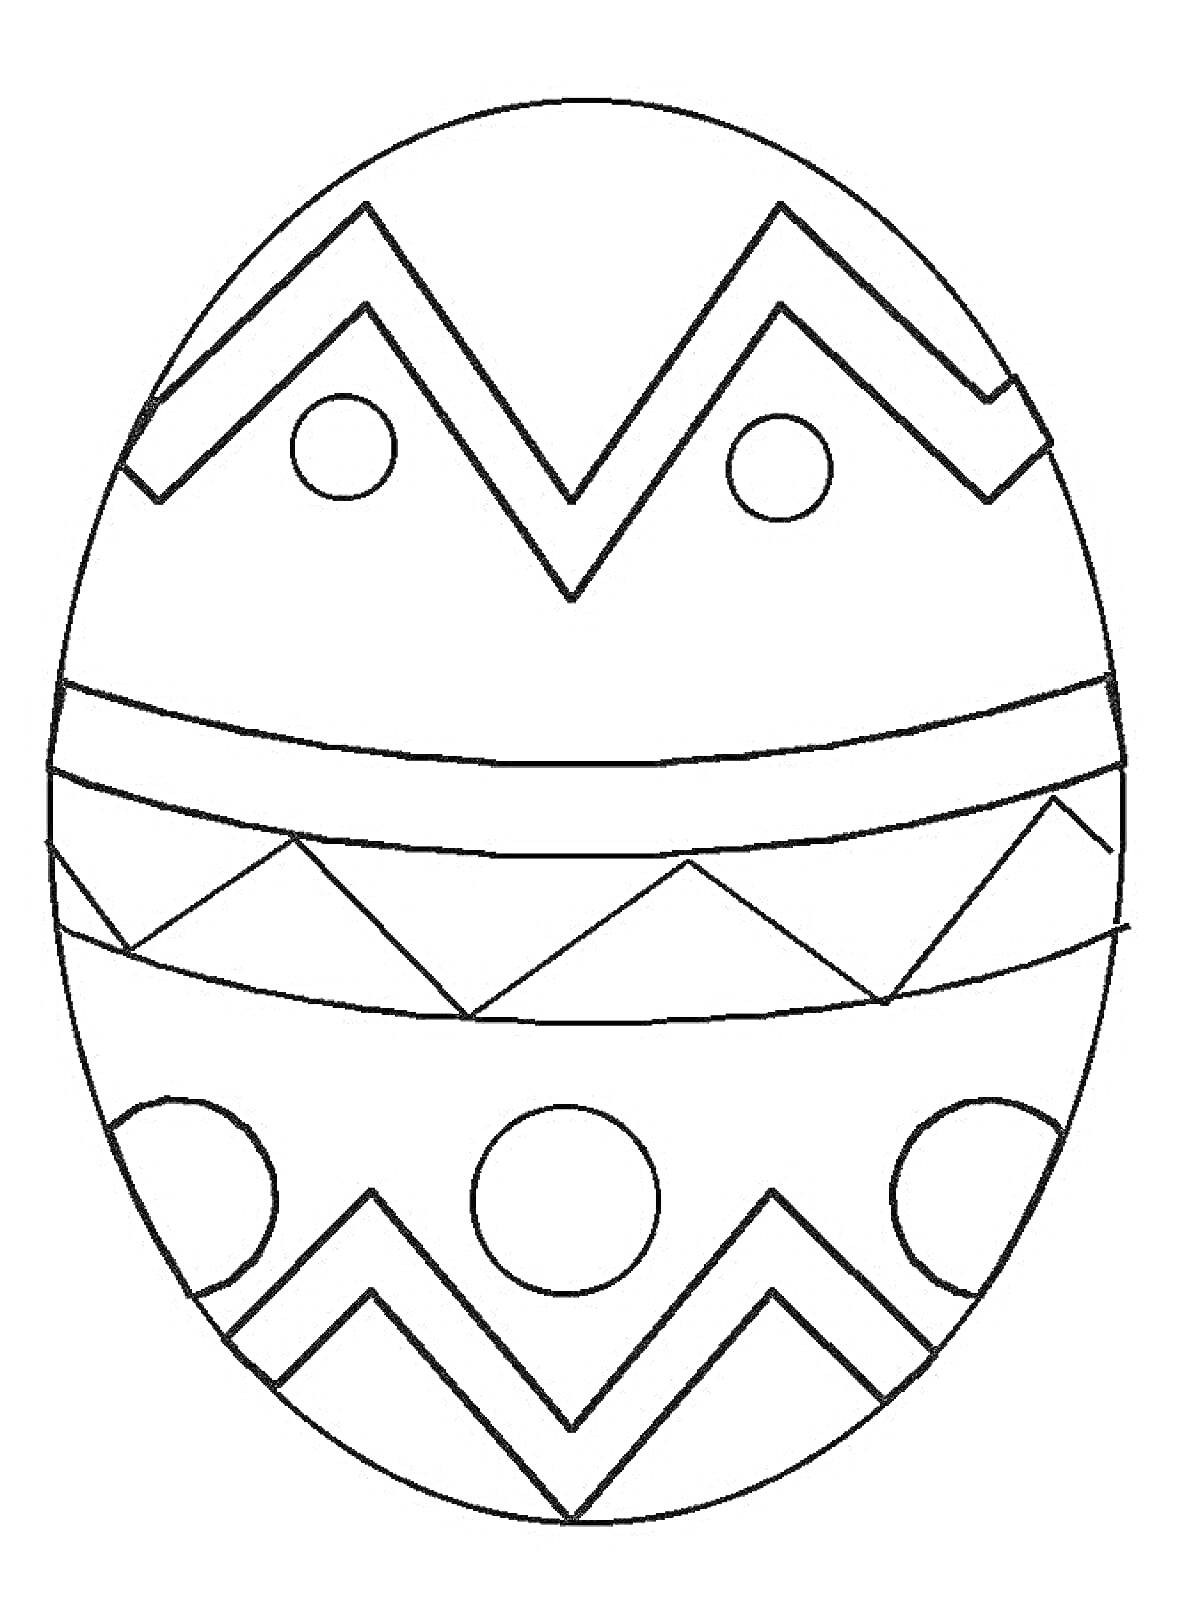 Раскраска Пасхальное яйцо с зигзагами, треугольниками и кругами